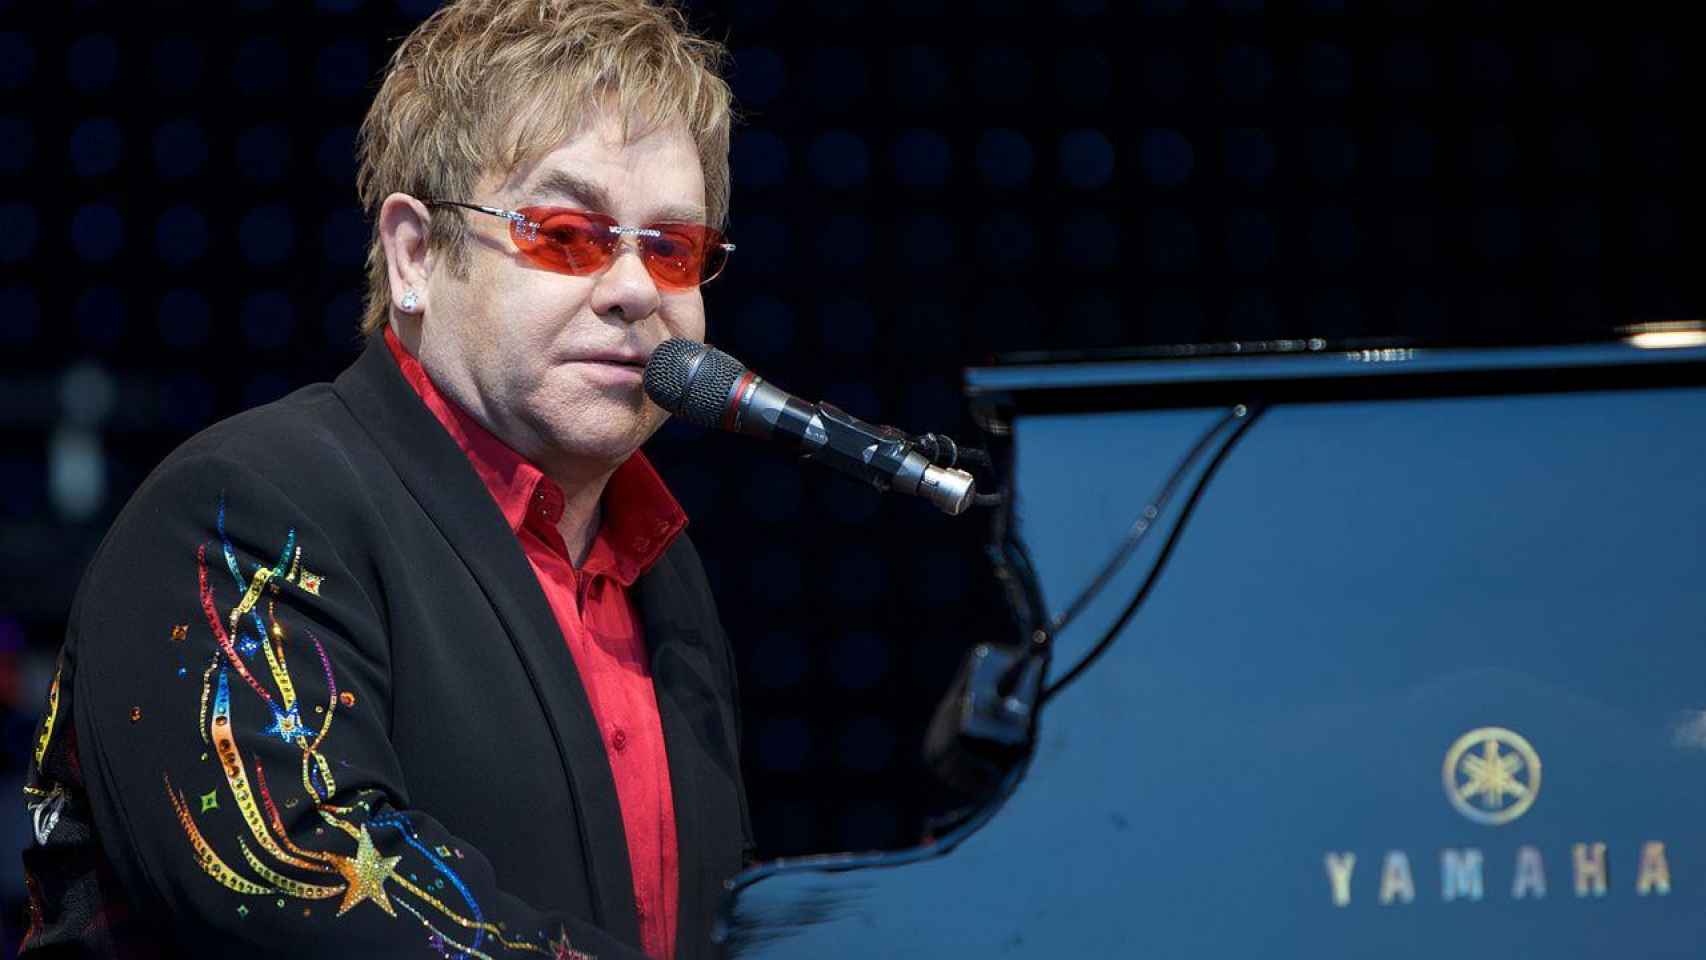 El cantante británico Elton John lanza un libro sobre su vida / ERNST VIKNE - CREATIVE COMMONS